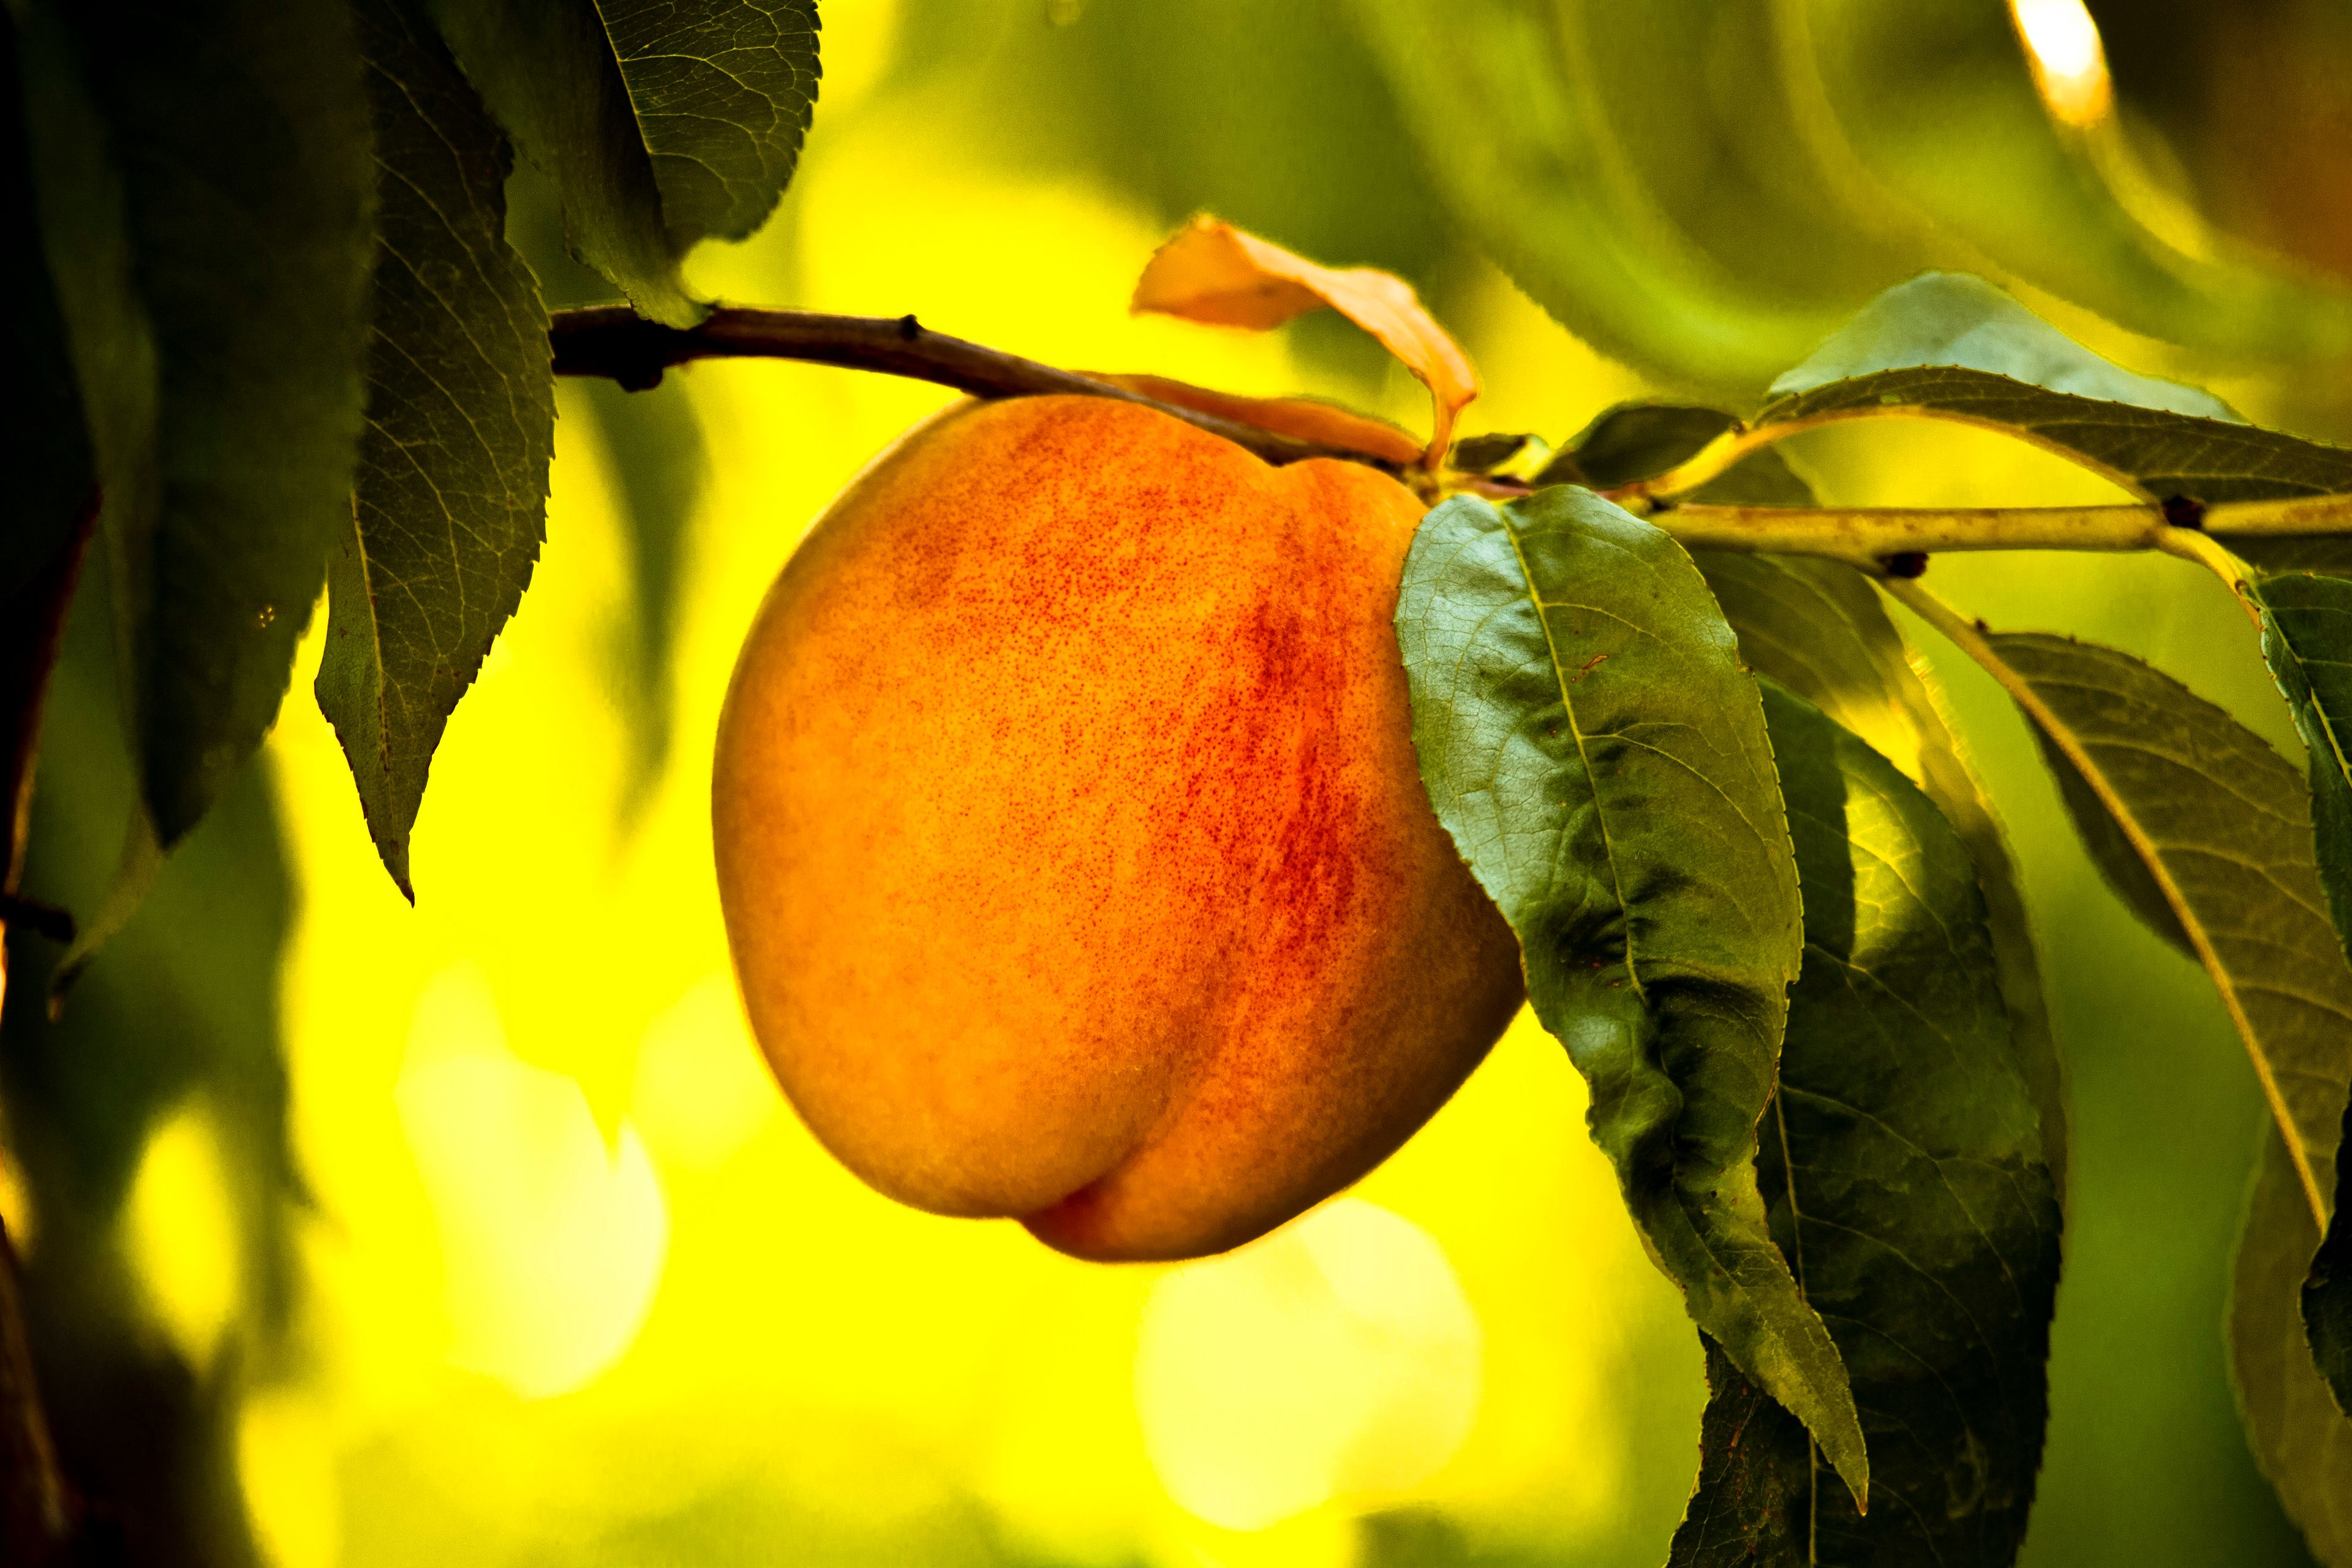 A peach in a tree.